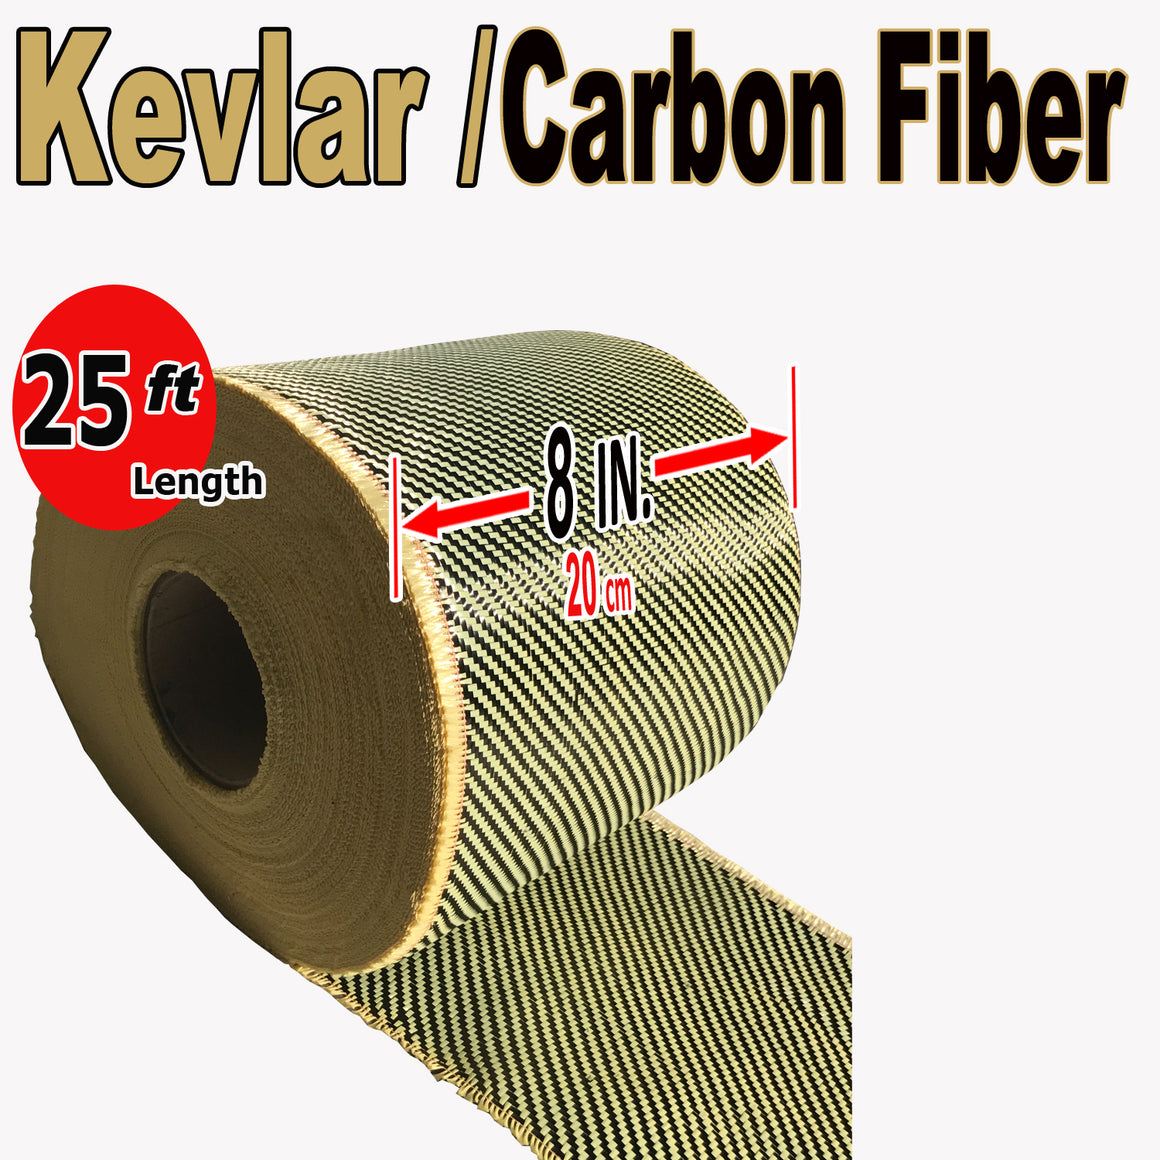 KEVLAR ARAMID  Fabric - 8 in x 25 ft - Ylw/Blk Twill - 240g/m2 - 3K TOW